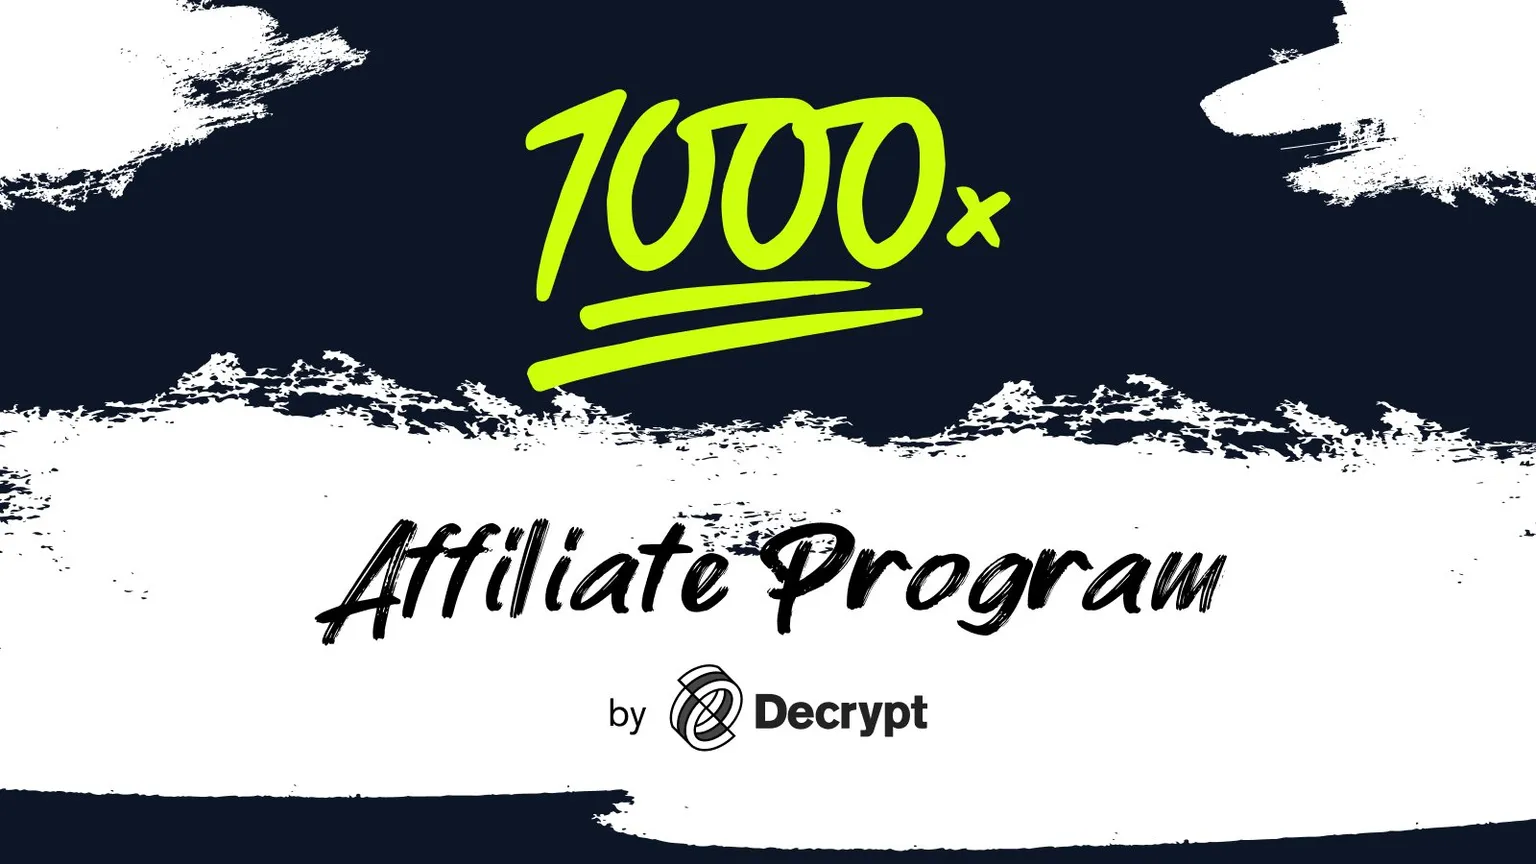 1000x Affiliate Program launches. Image: Decrypt